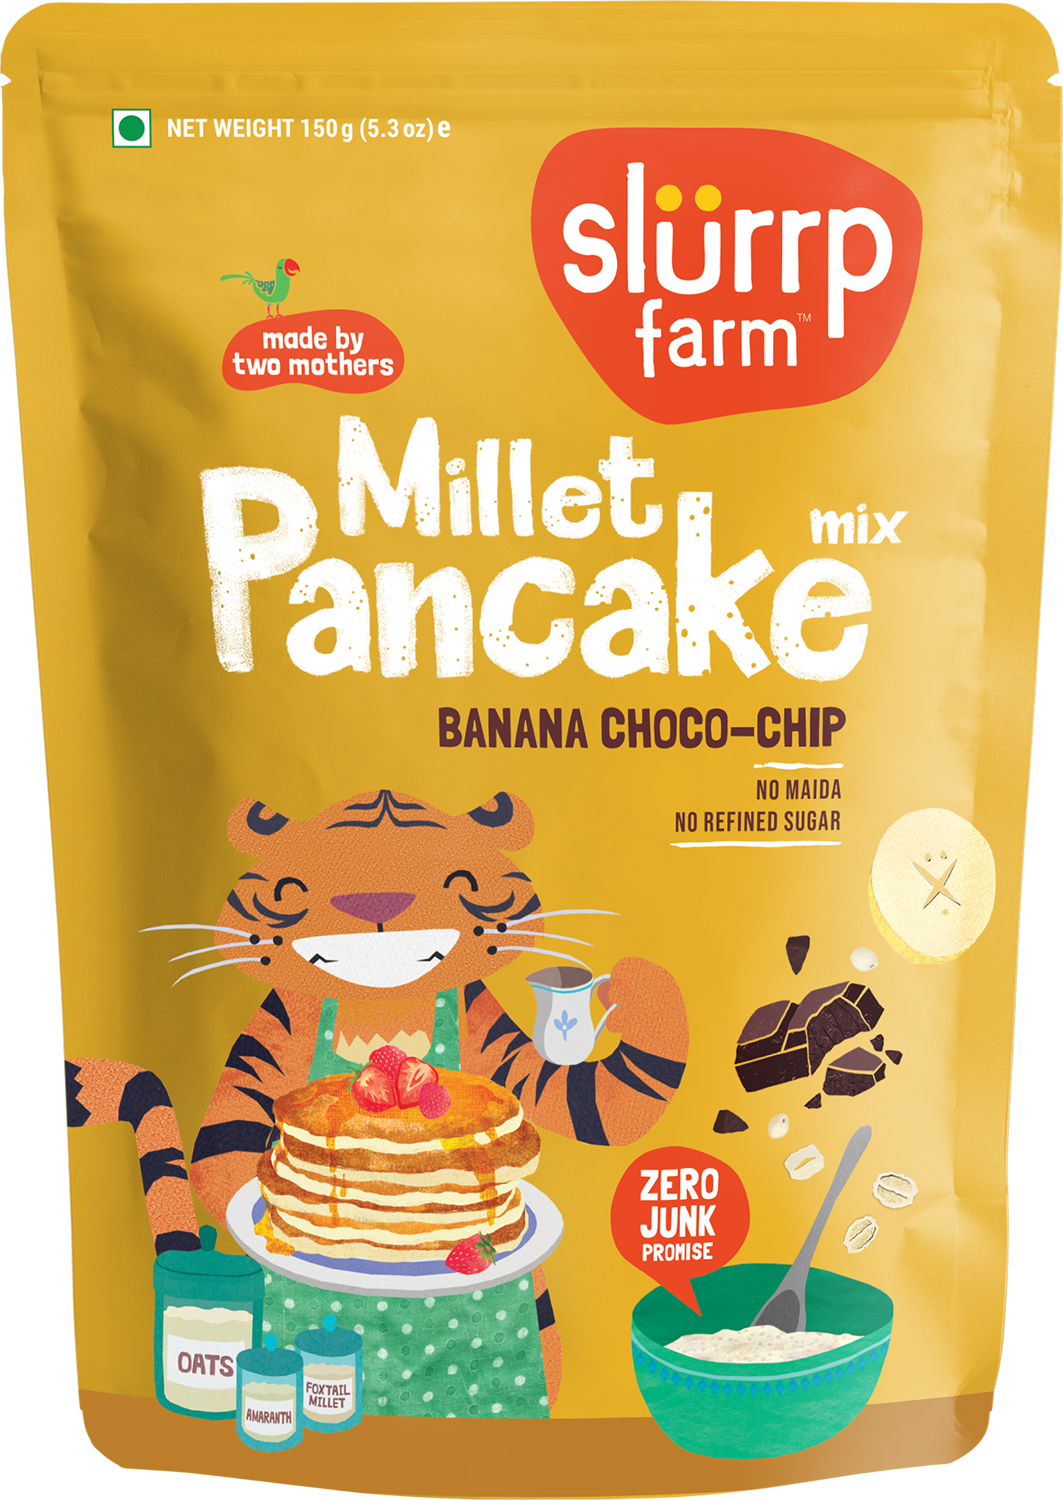 Banana Choco-Chip Millet Pancake